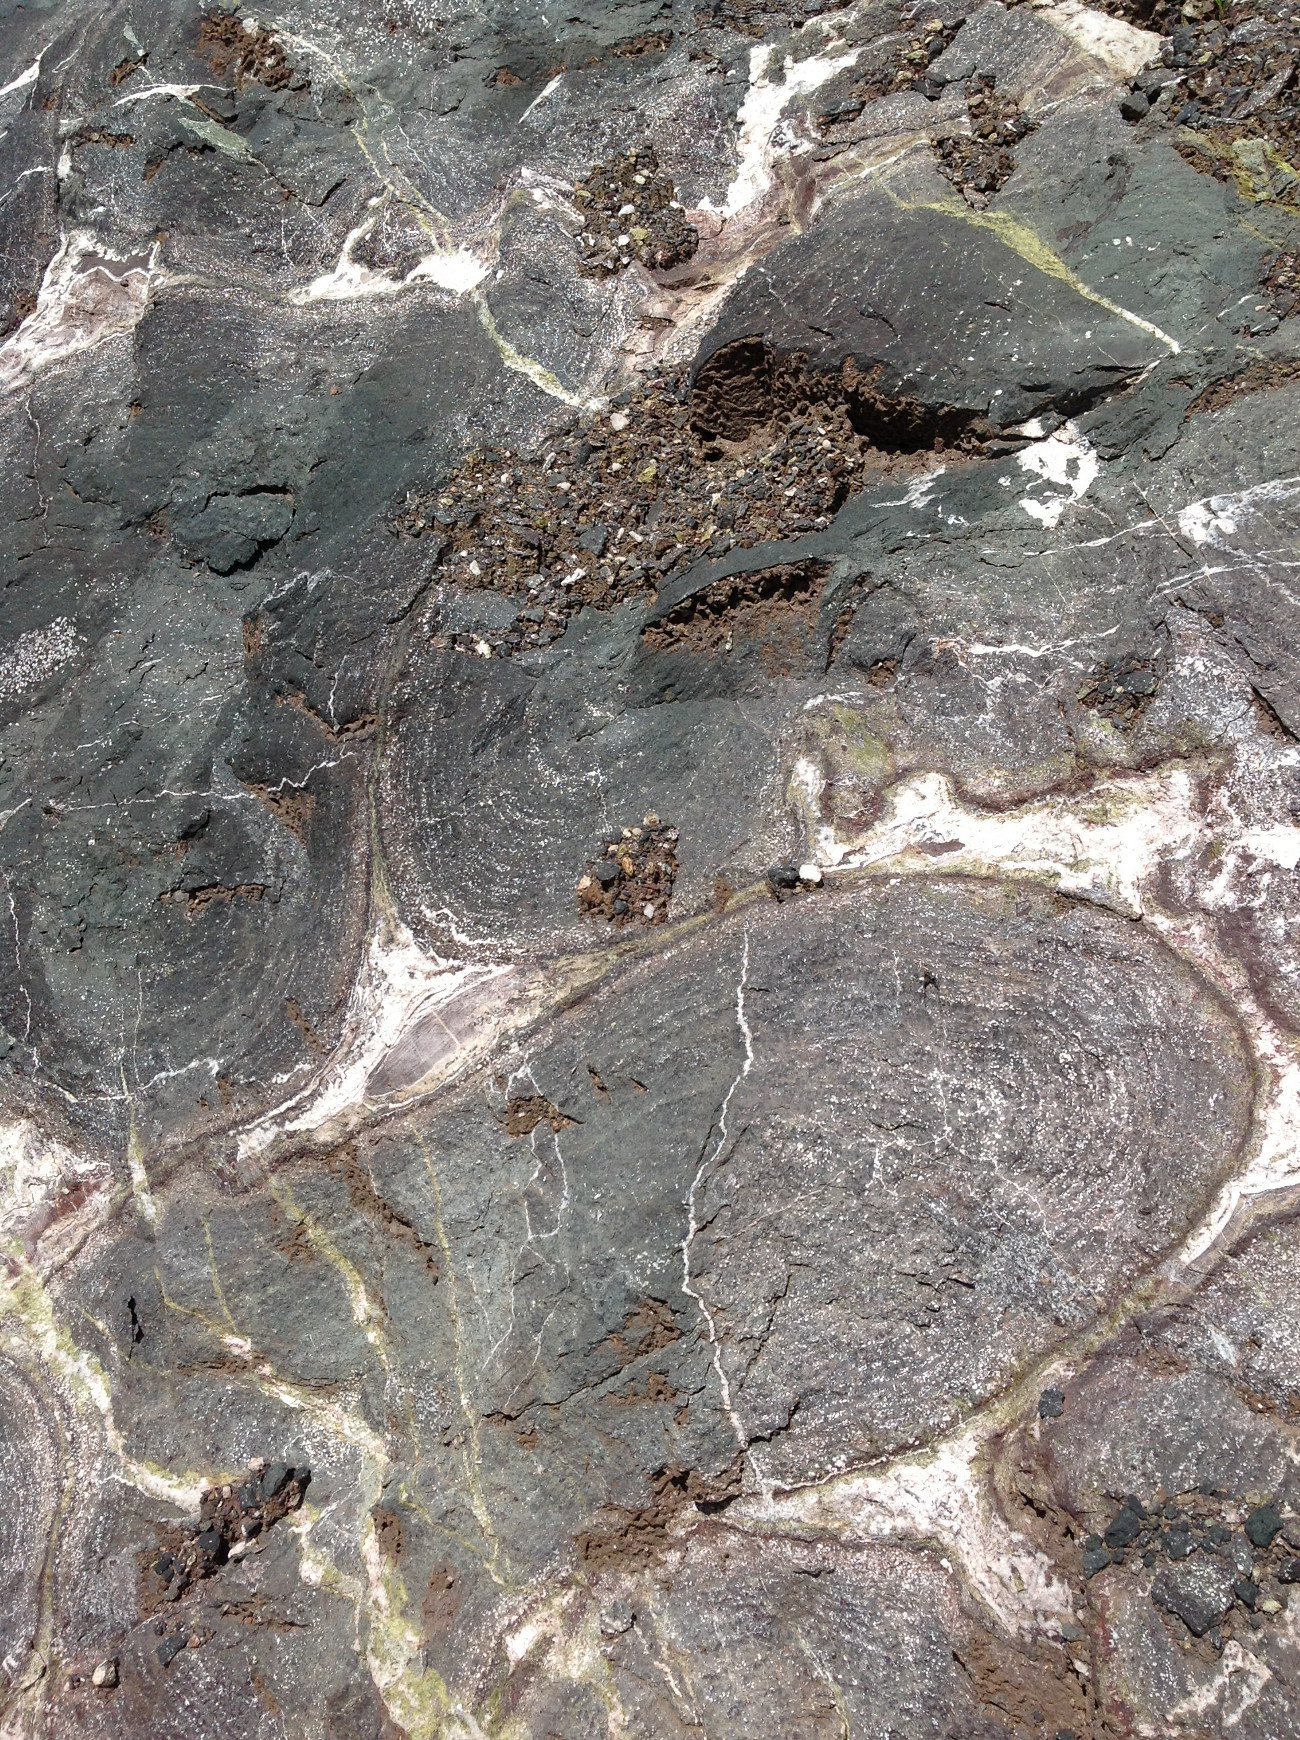 Pillow lava métasomatisé Méta-basalte hydrothermalisé Pyrénées  Eibar 